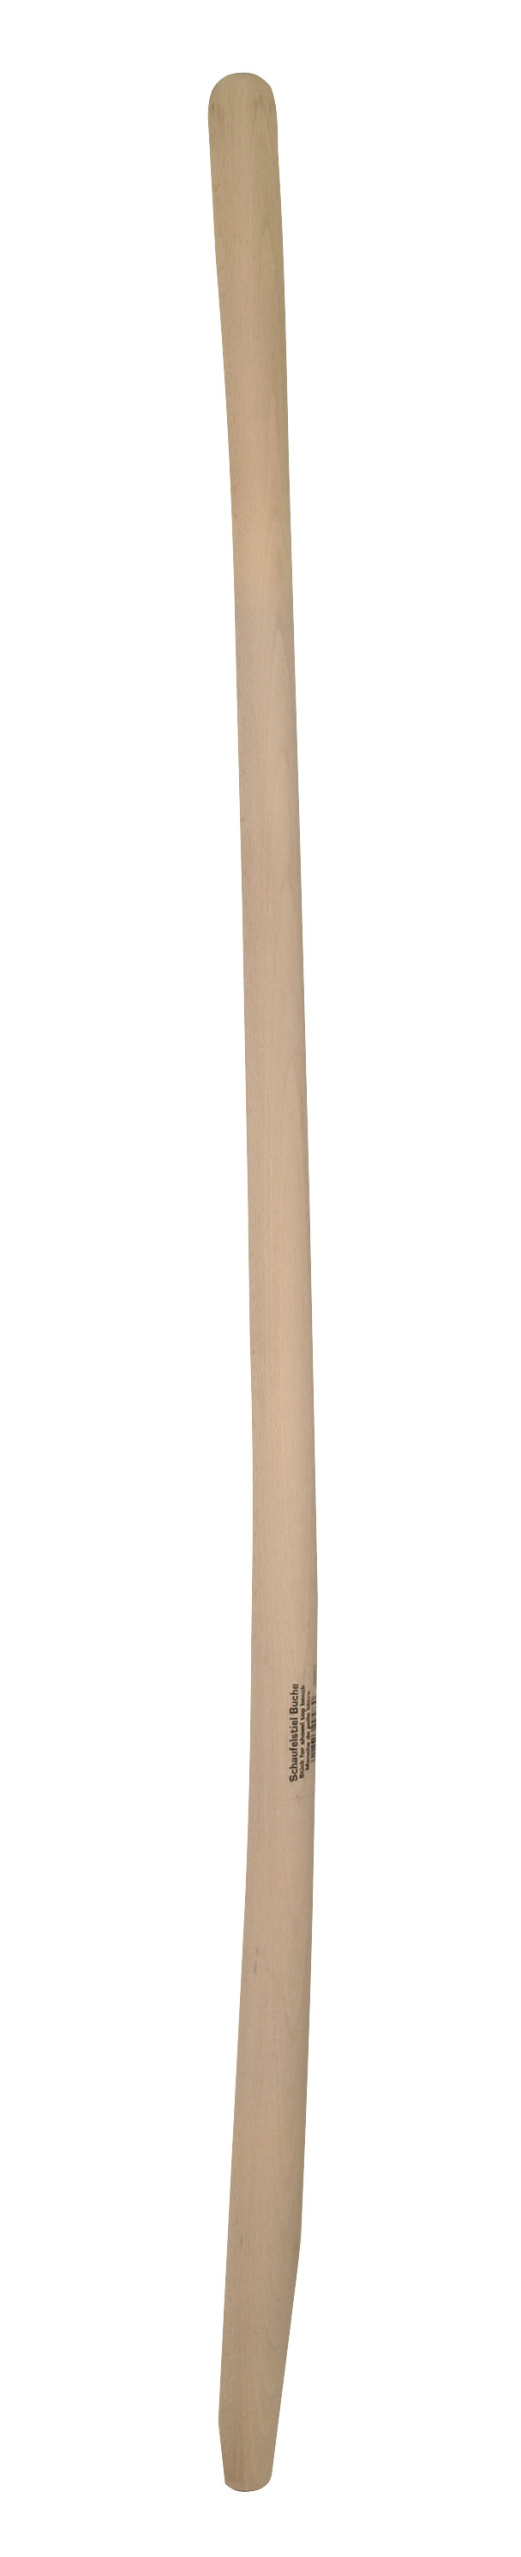 Schaufelstiel Buche  130cm